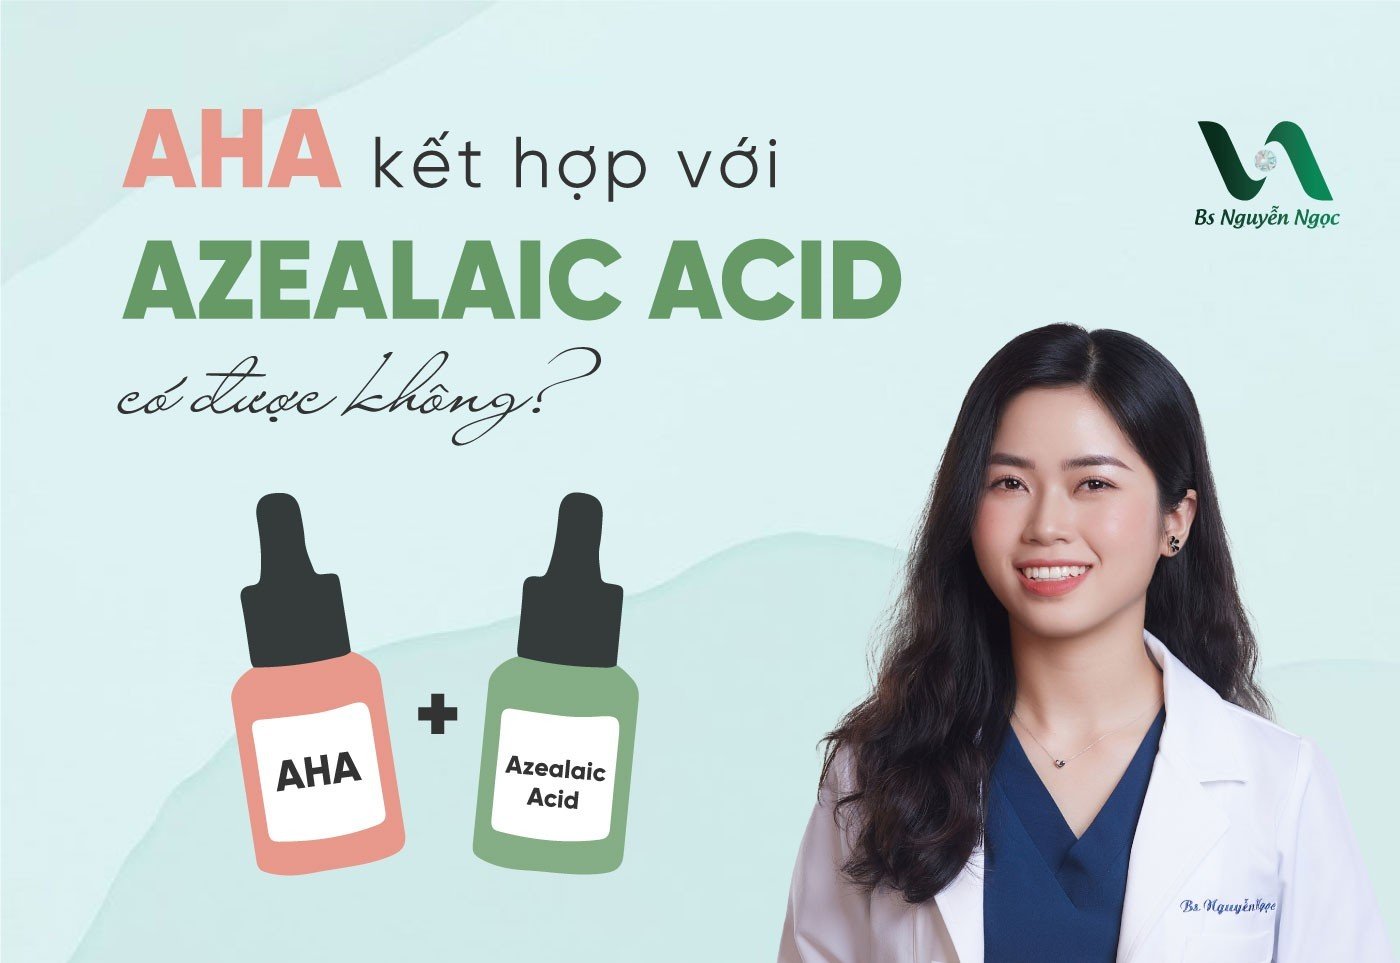 AHA kết hợp với Azelaic Acid có được không?